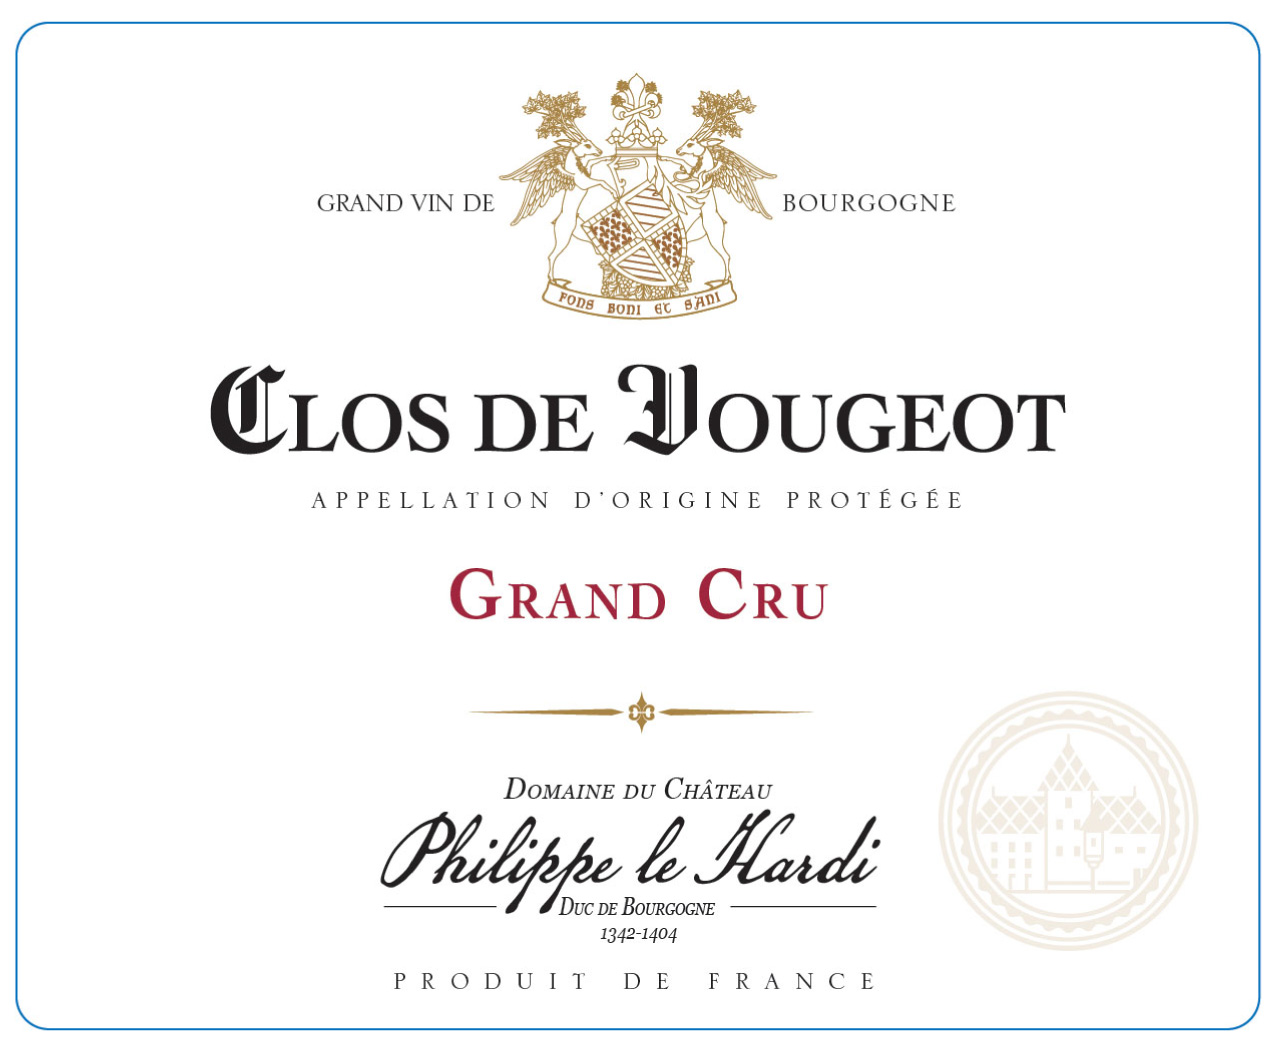 Domaine du Château Philippe le Hardi - Clos de Vougeot Grand Cru label